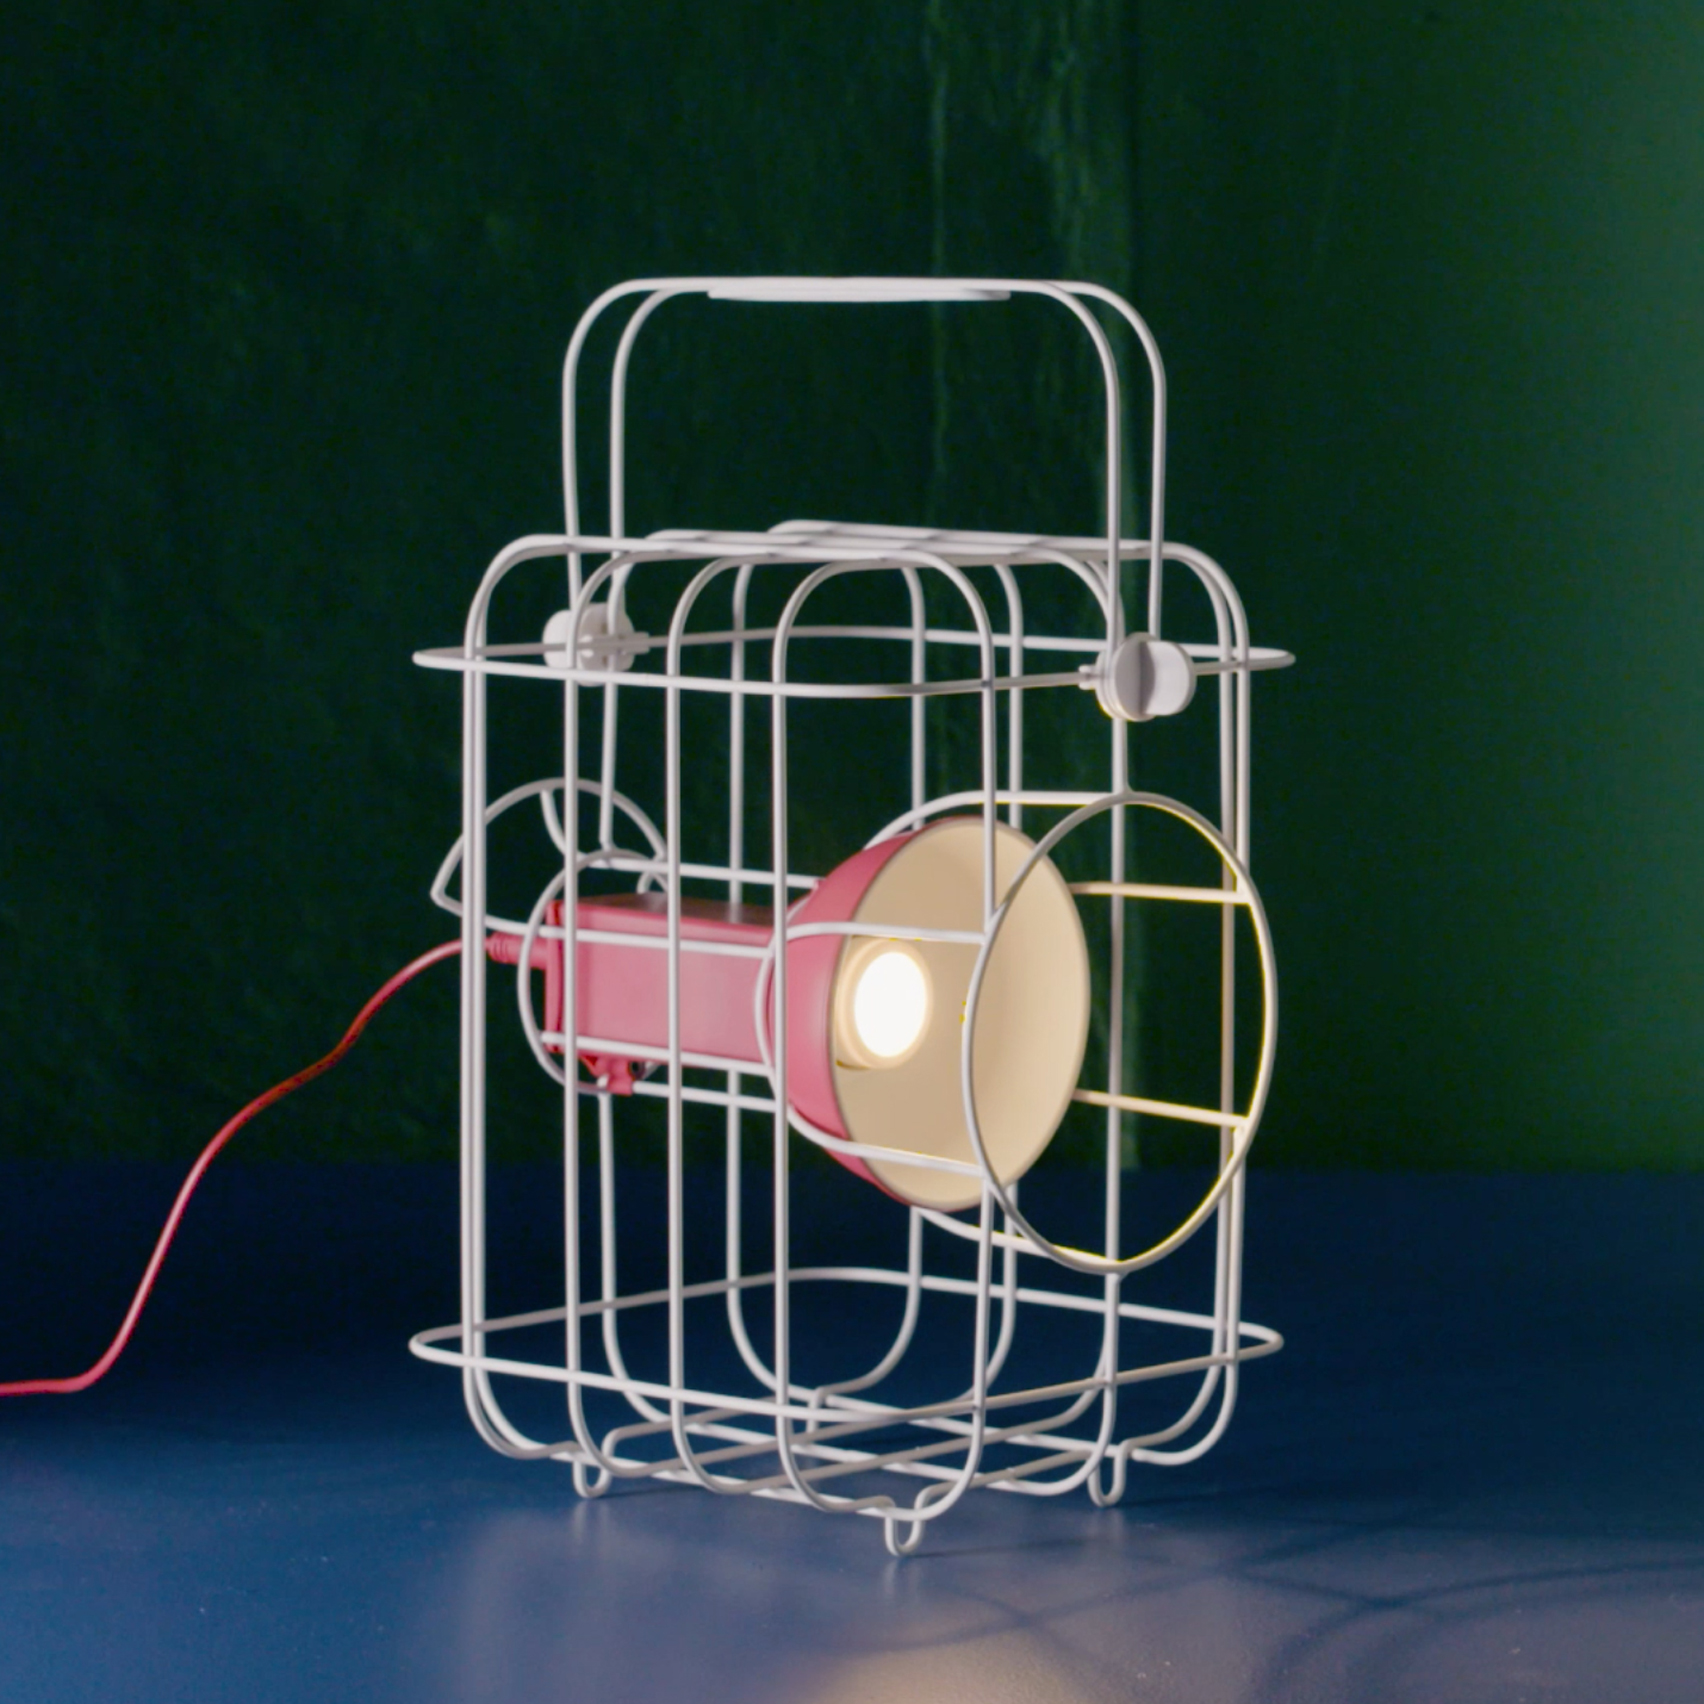 speelplaats Toeschouwer draad Matali Crasset models caged IKEA light on vintage railway lamps